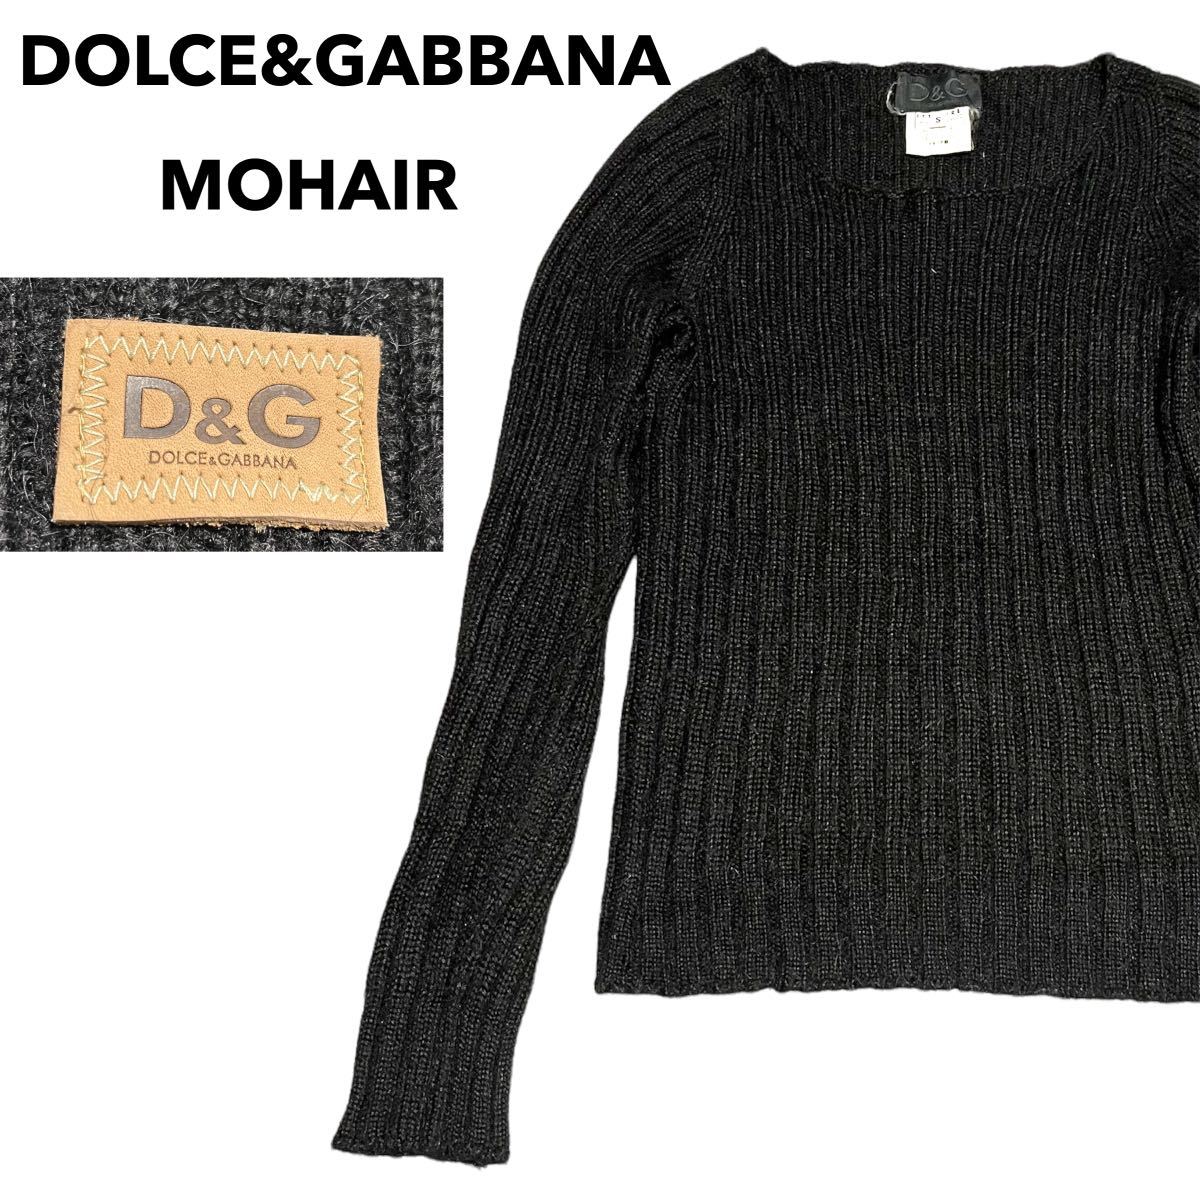 イタリア製 DOLCE&GABBANA ドルチェ&ガッバーナ モヘア混 ニット セーター 長袖 D&G ドルガバ メンズ レディース